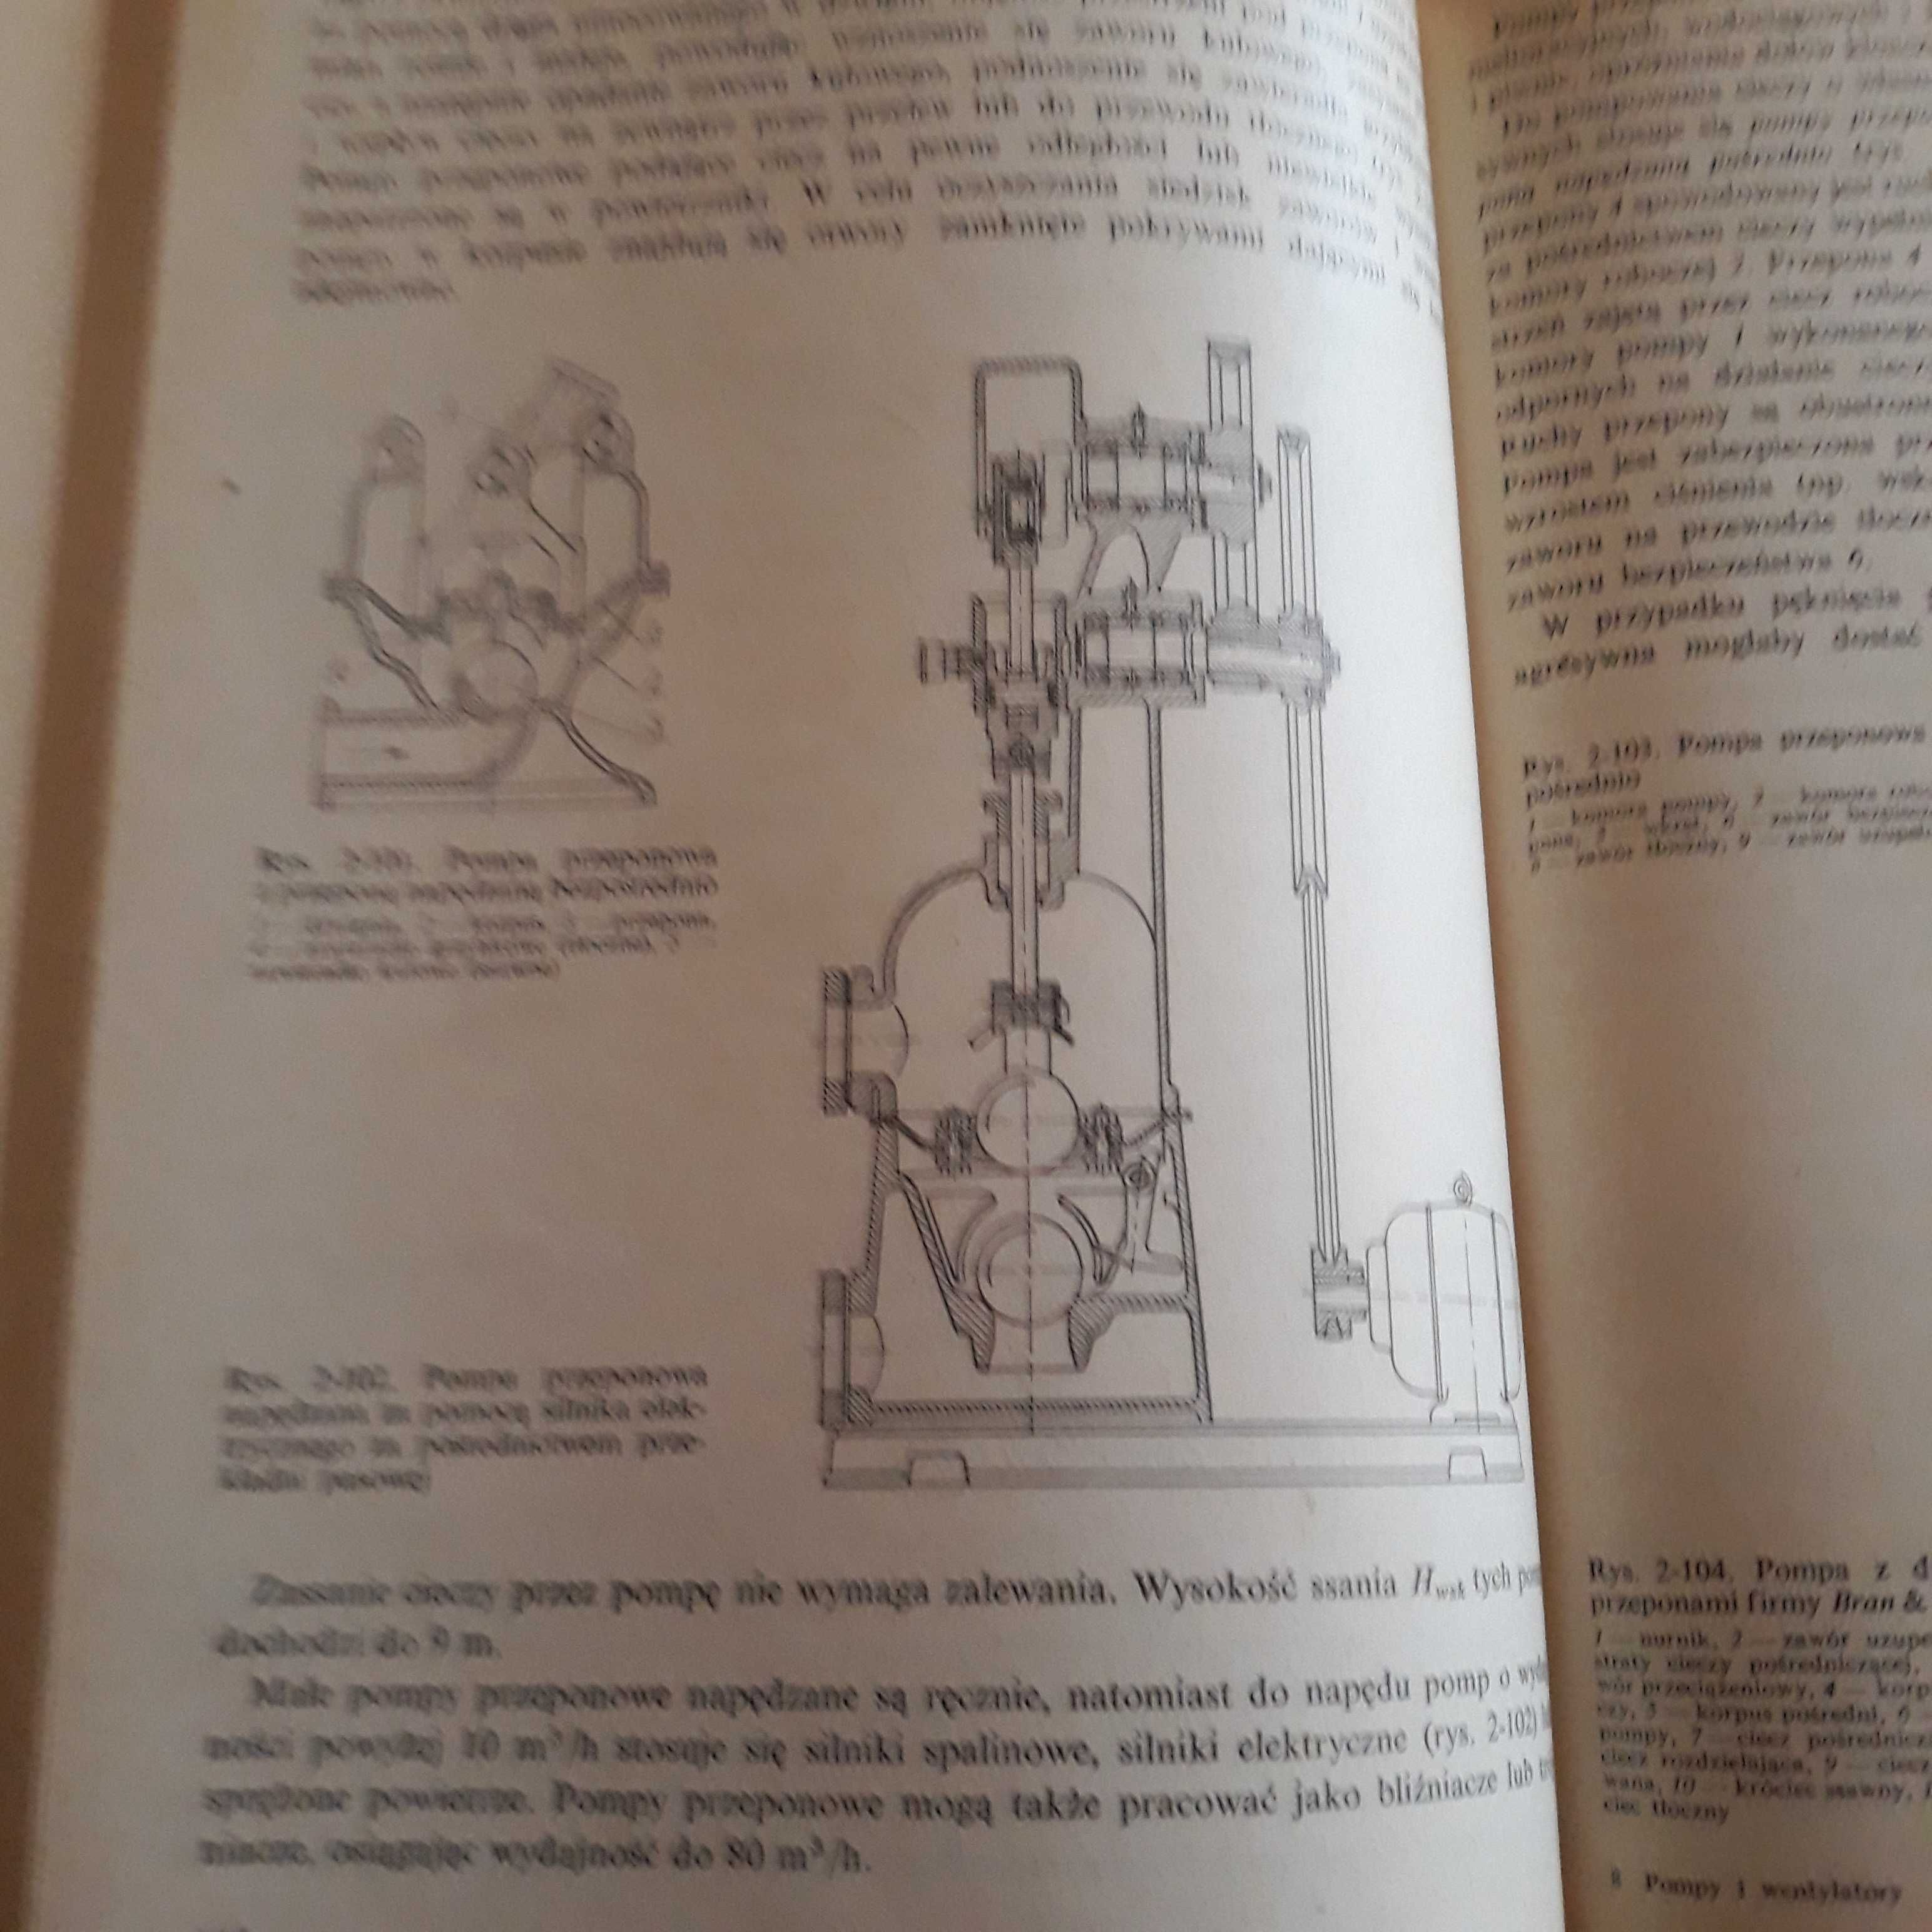 F.Jankowski Pompy i wentylatory w inżynierii sanitarnej